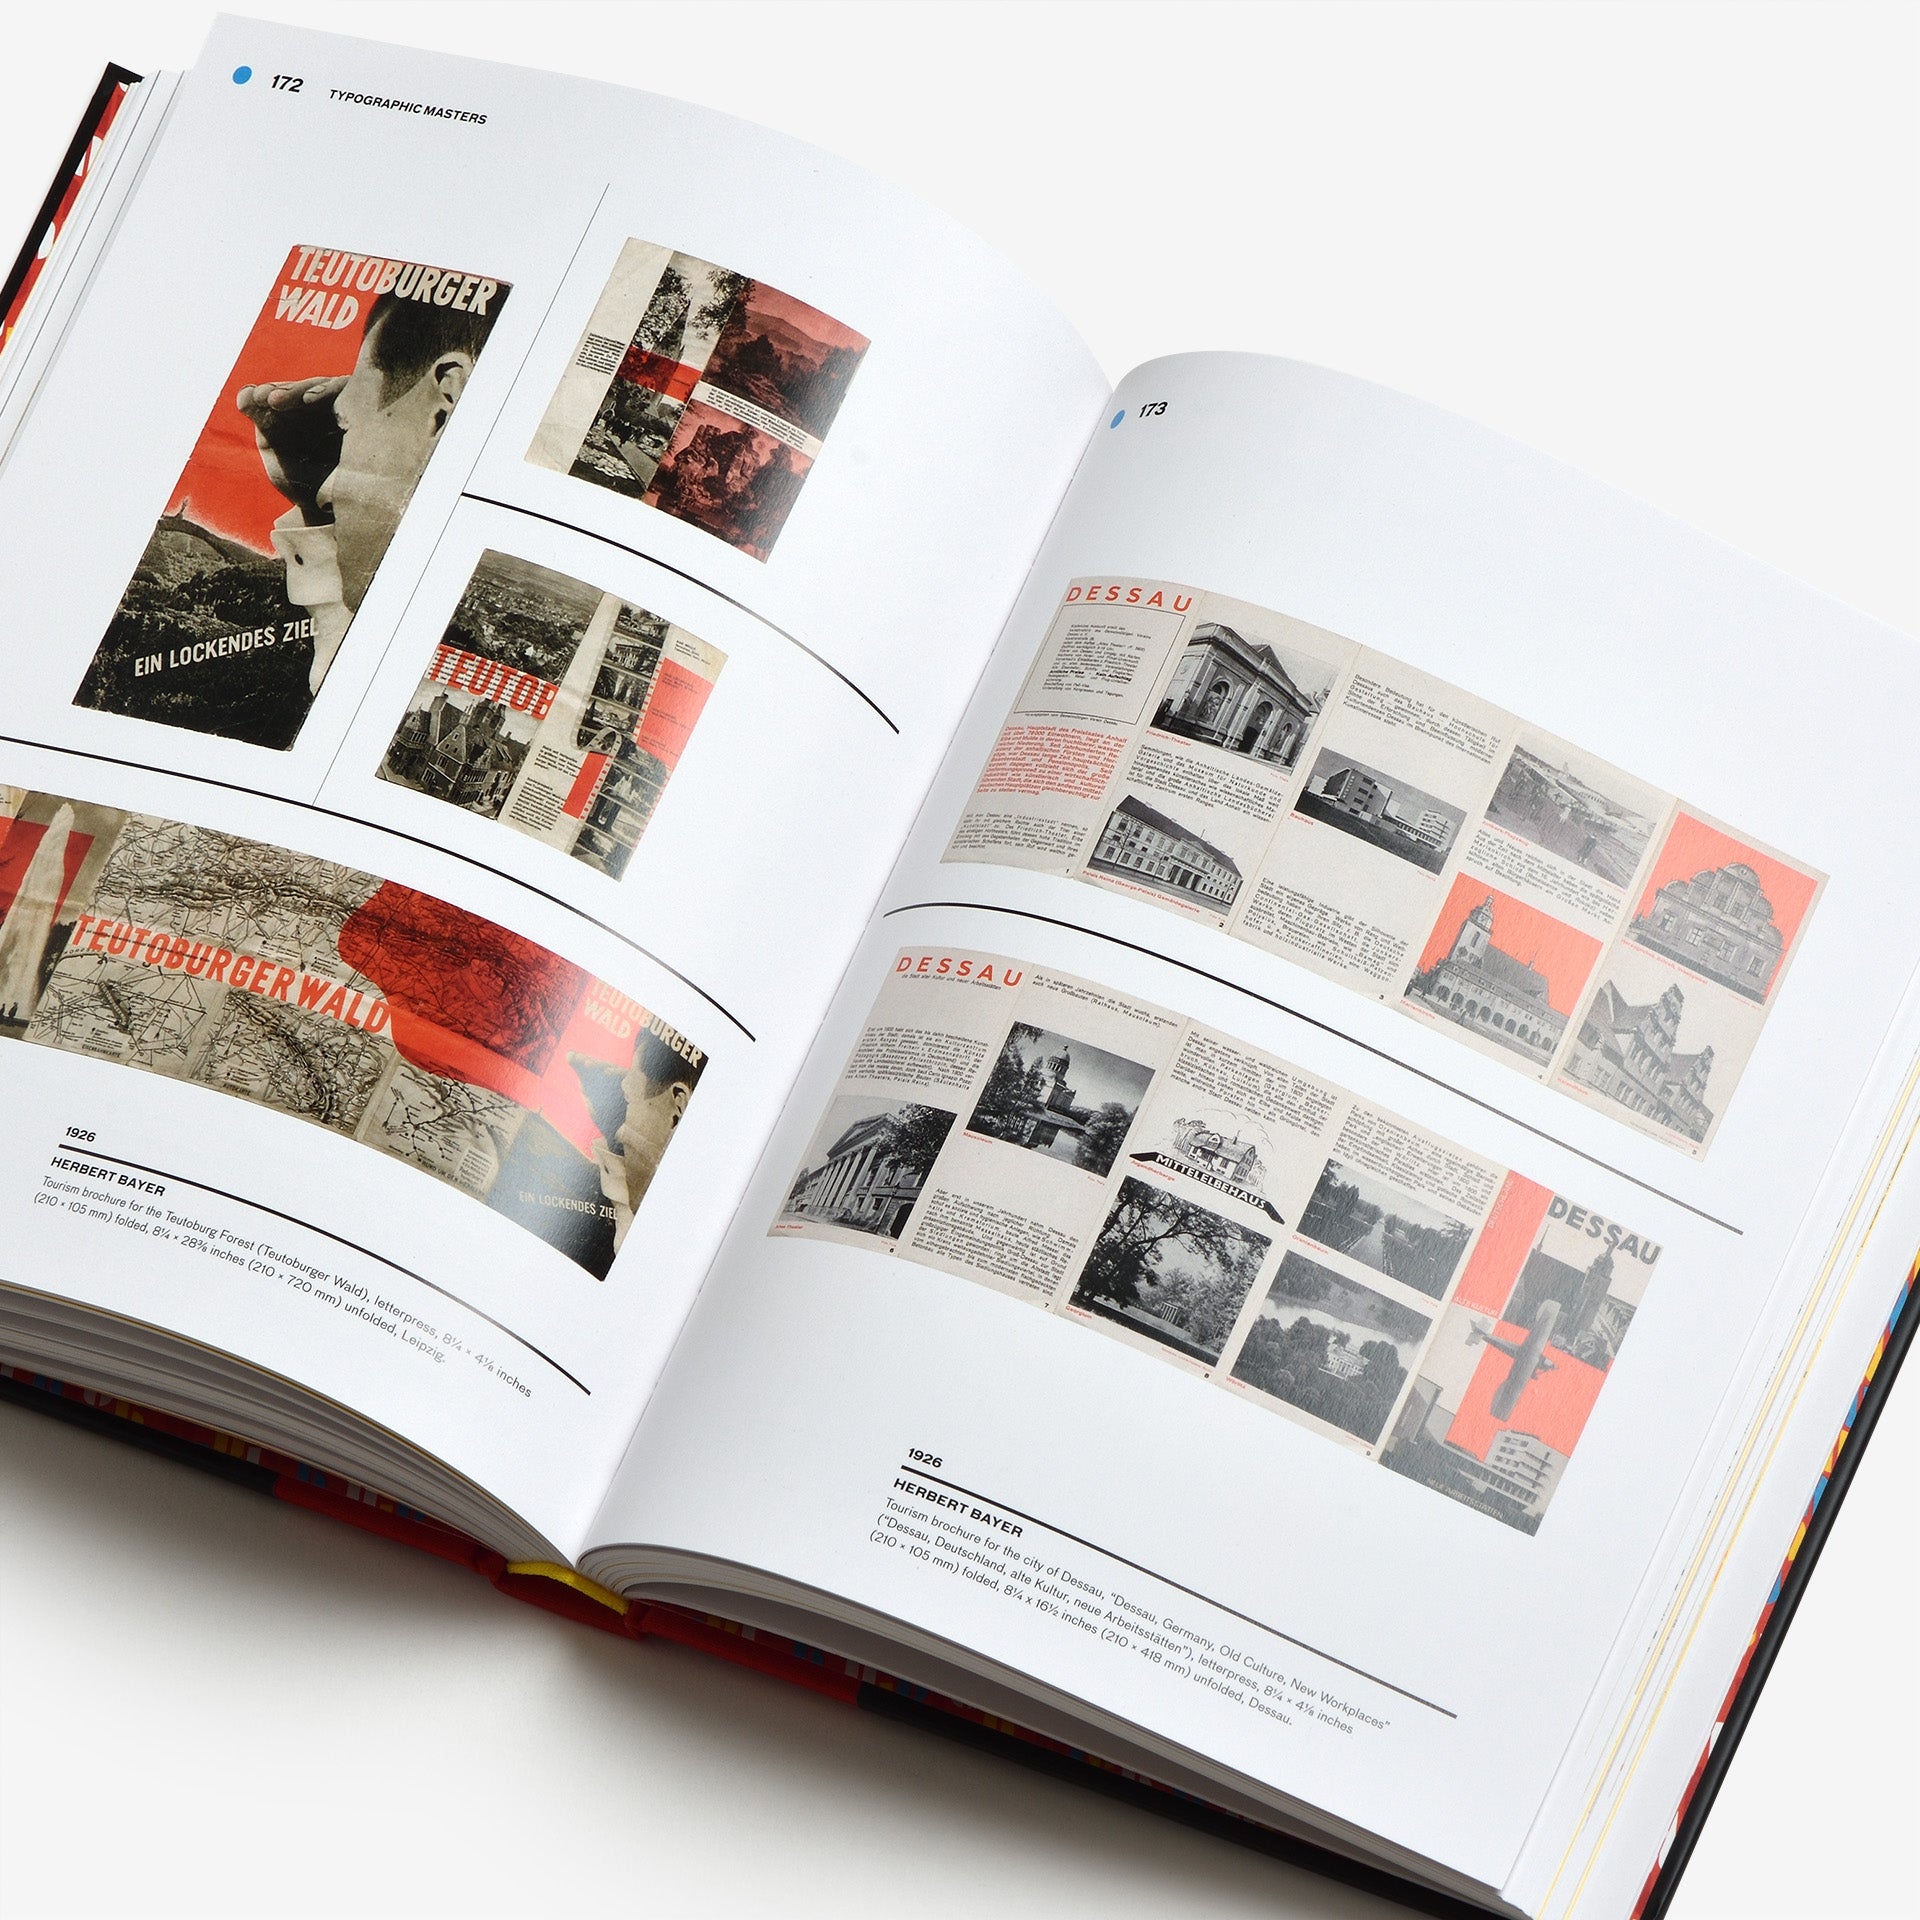 Bauhaus Typography at 100